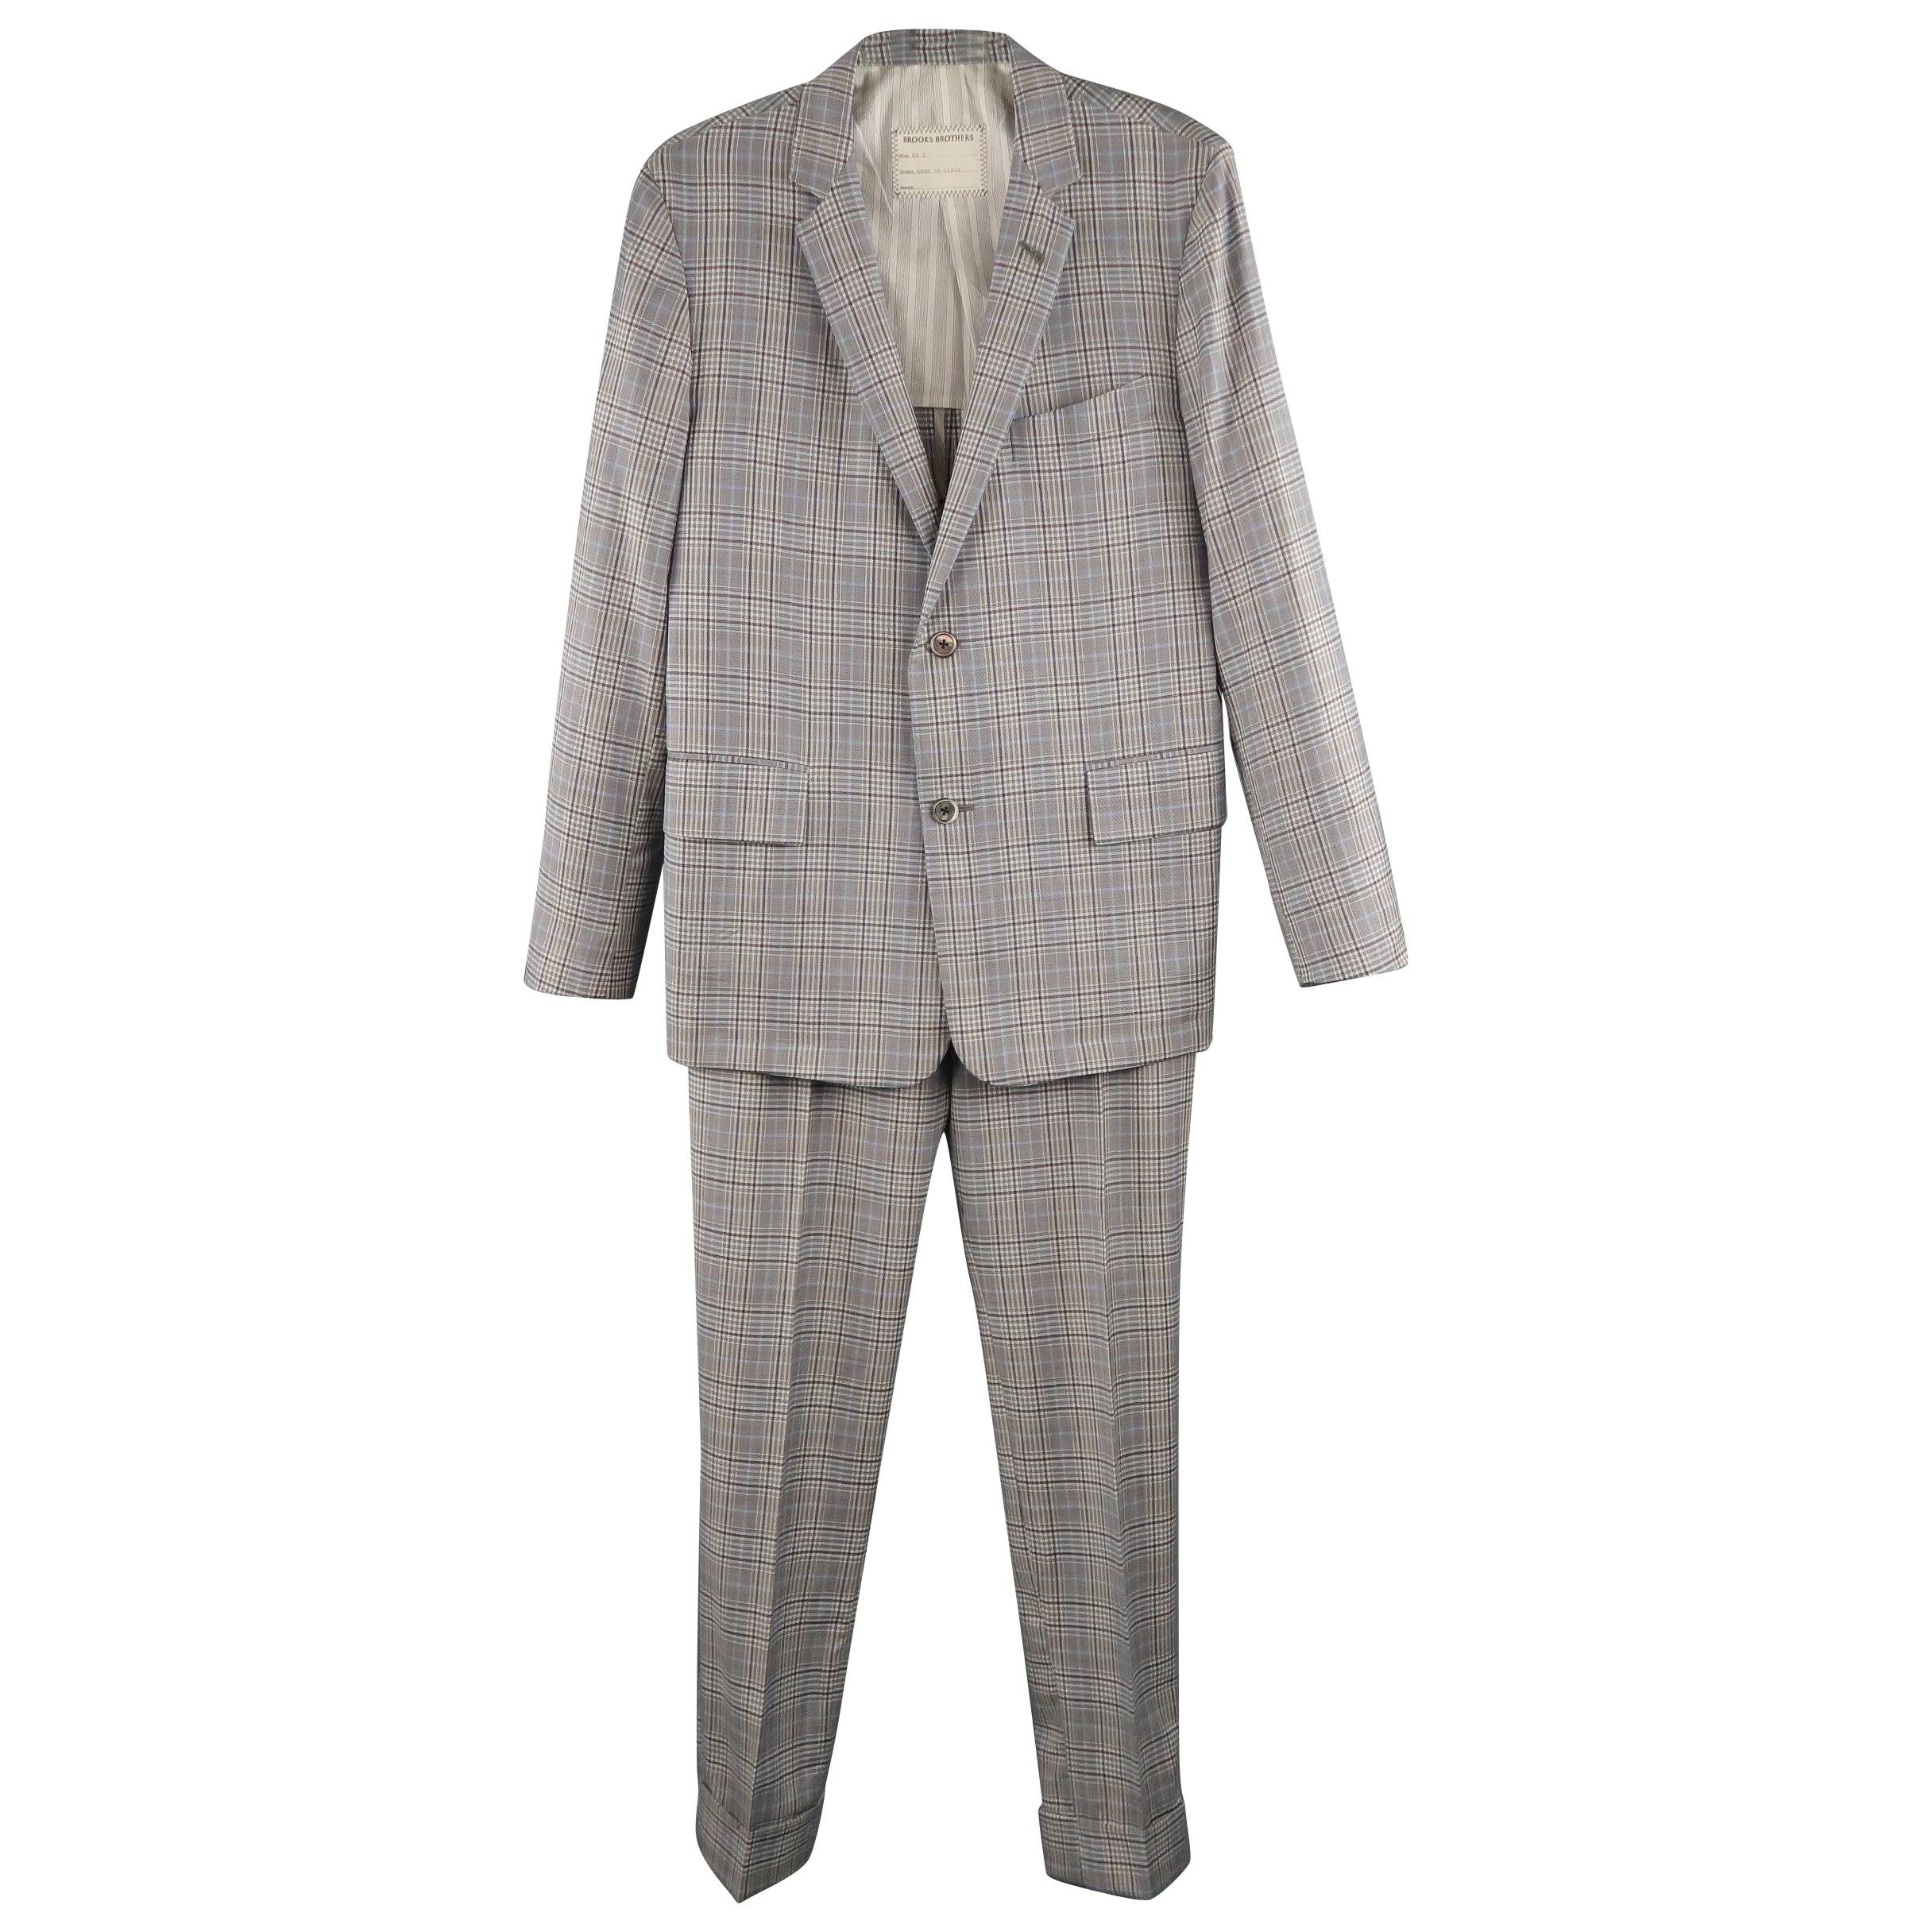 Men's BROOKS BROTHERS 38 Short Gray & Blue Plaid Wool Blend Notch Lapel Suit